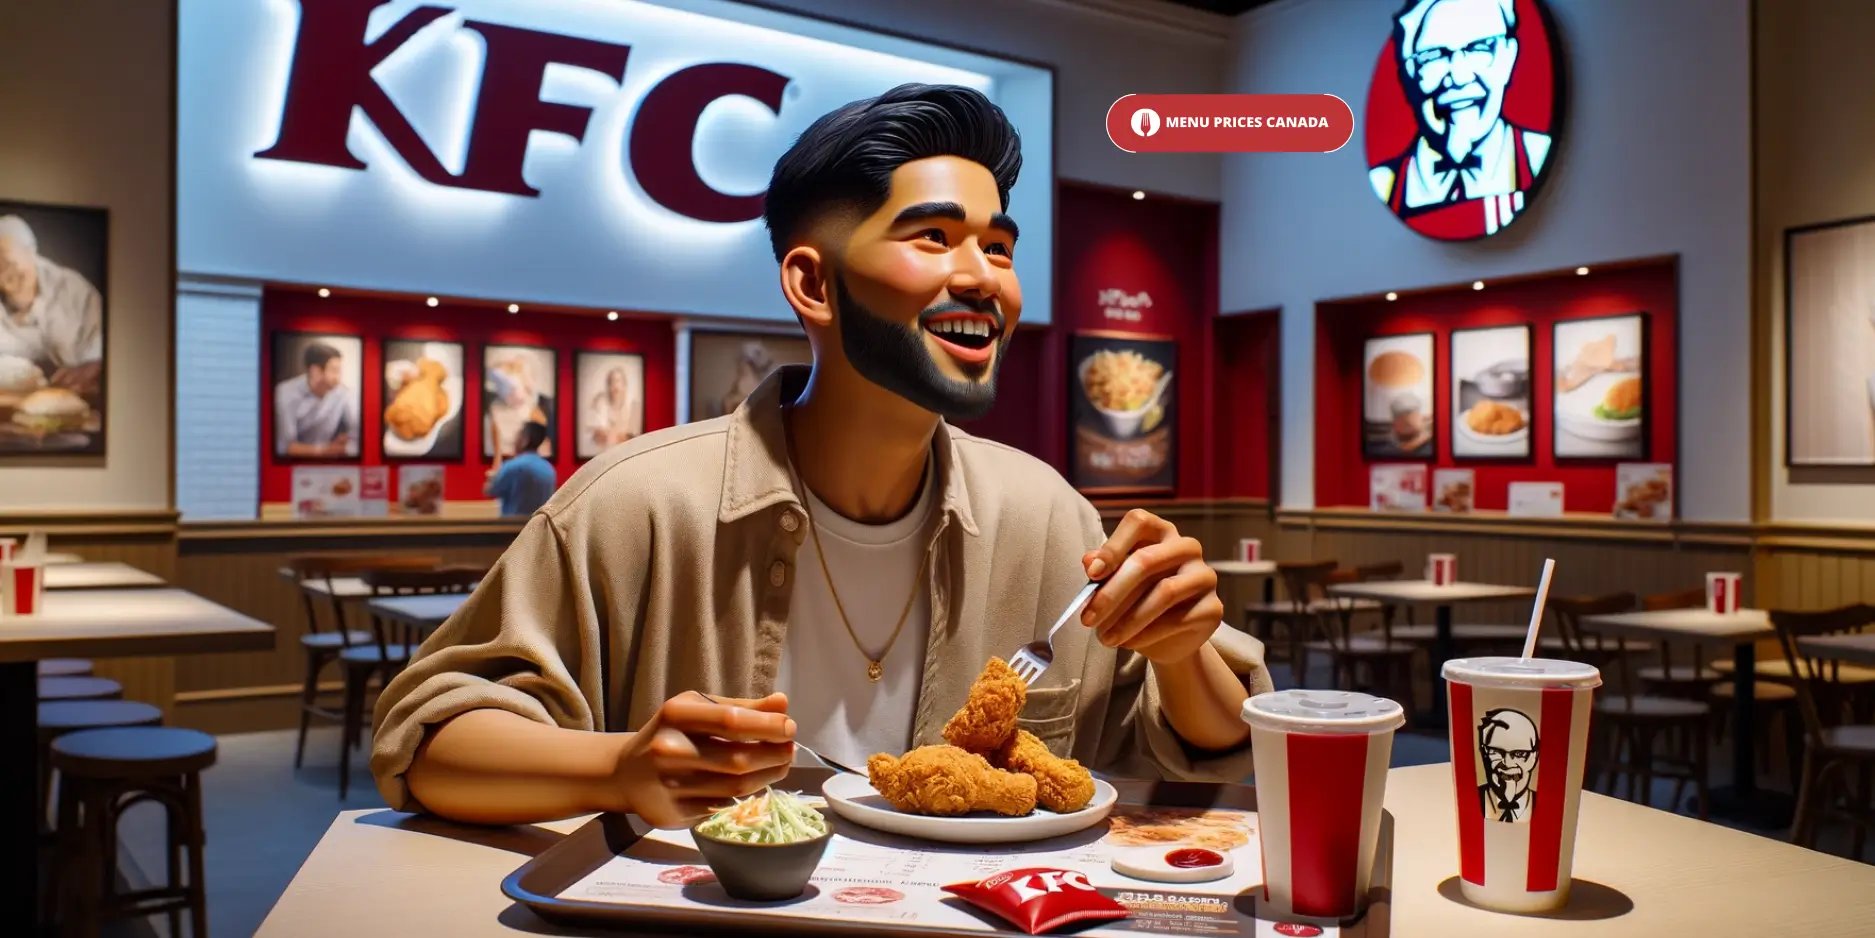 KFC-restaurant-Menu-Prices